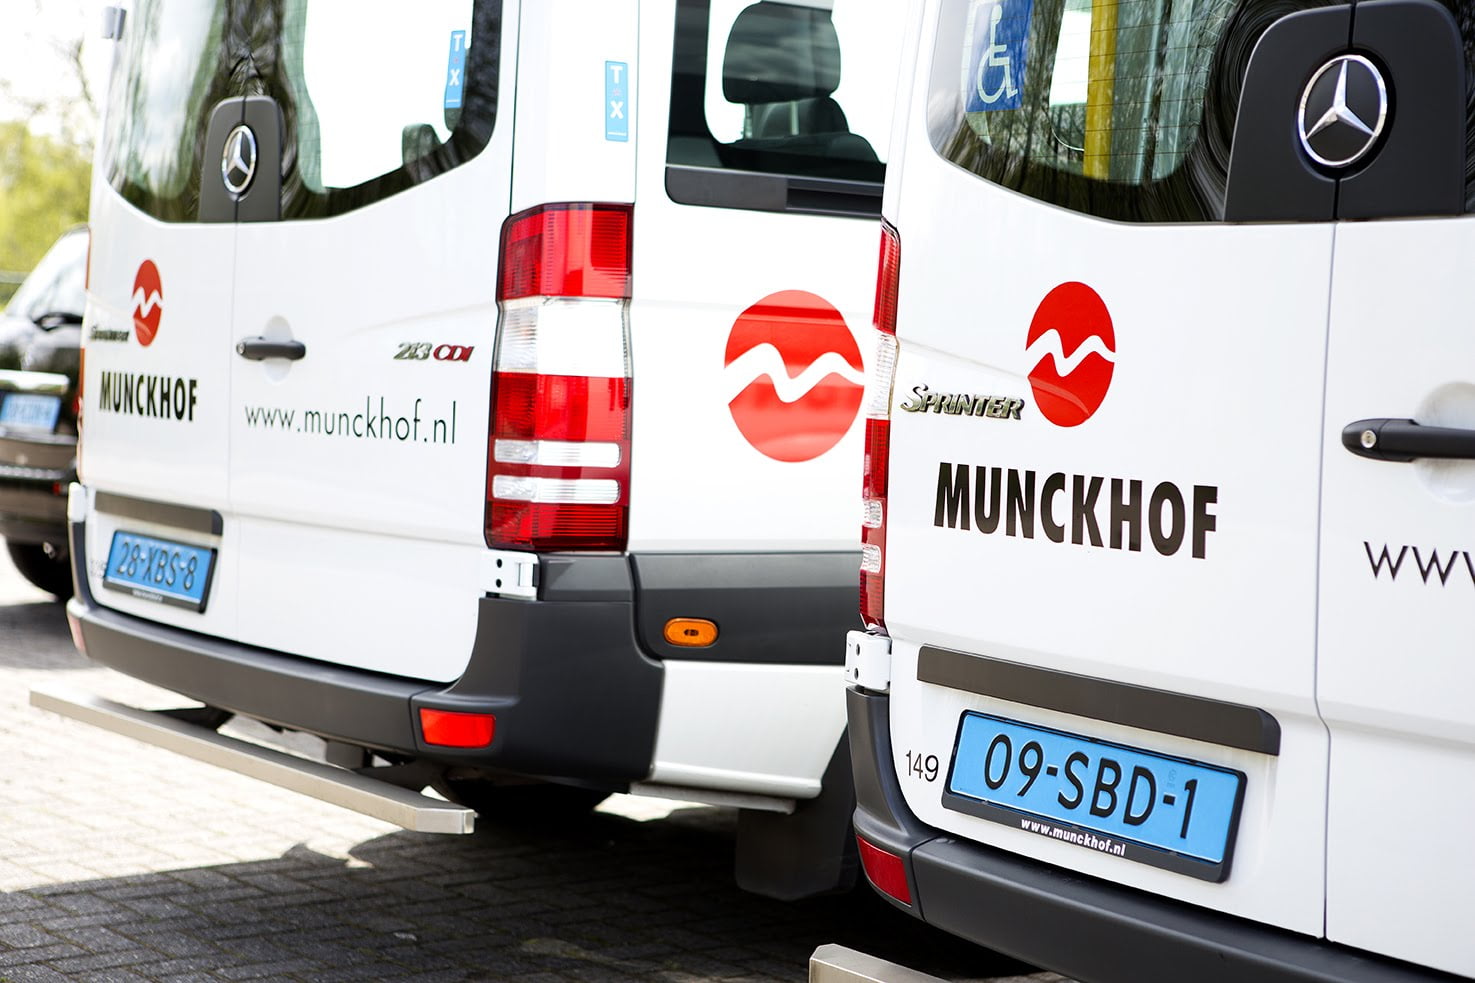 La société de transport Munckhof toujours sous la loupe à Zwolle